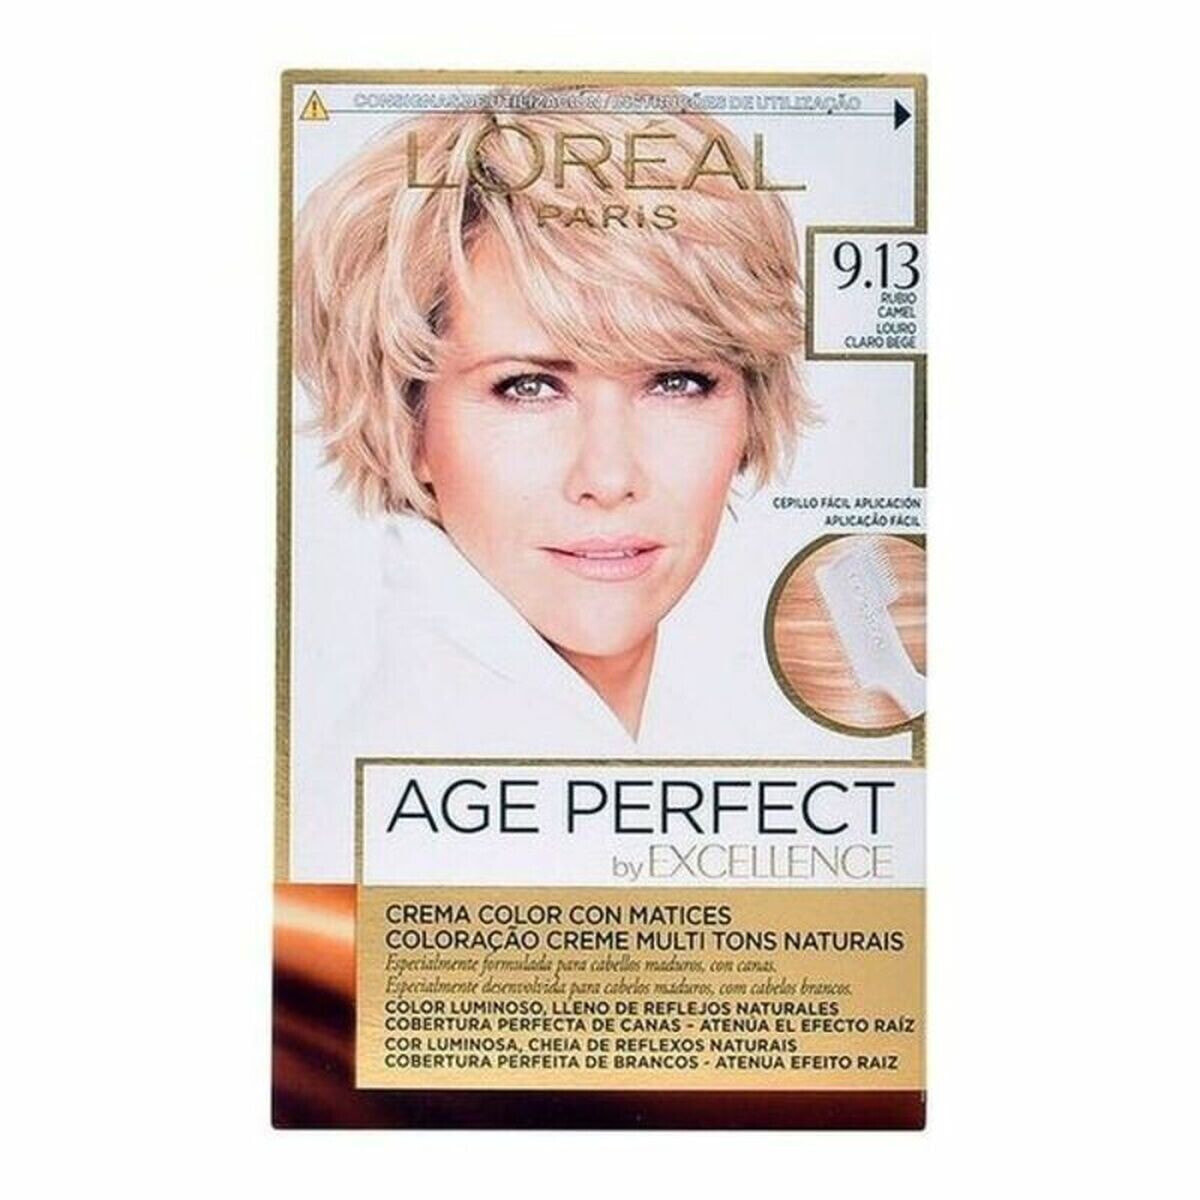 Антивозрастная постоянная краска Excellence Age Perfect L'Oreal Make Up Excellence Age Perfect Nº 9.0-rubio muy claro Nº 8.0-rub